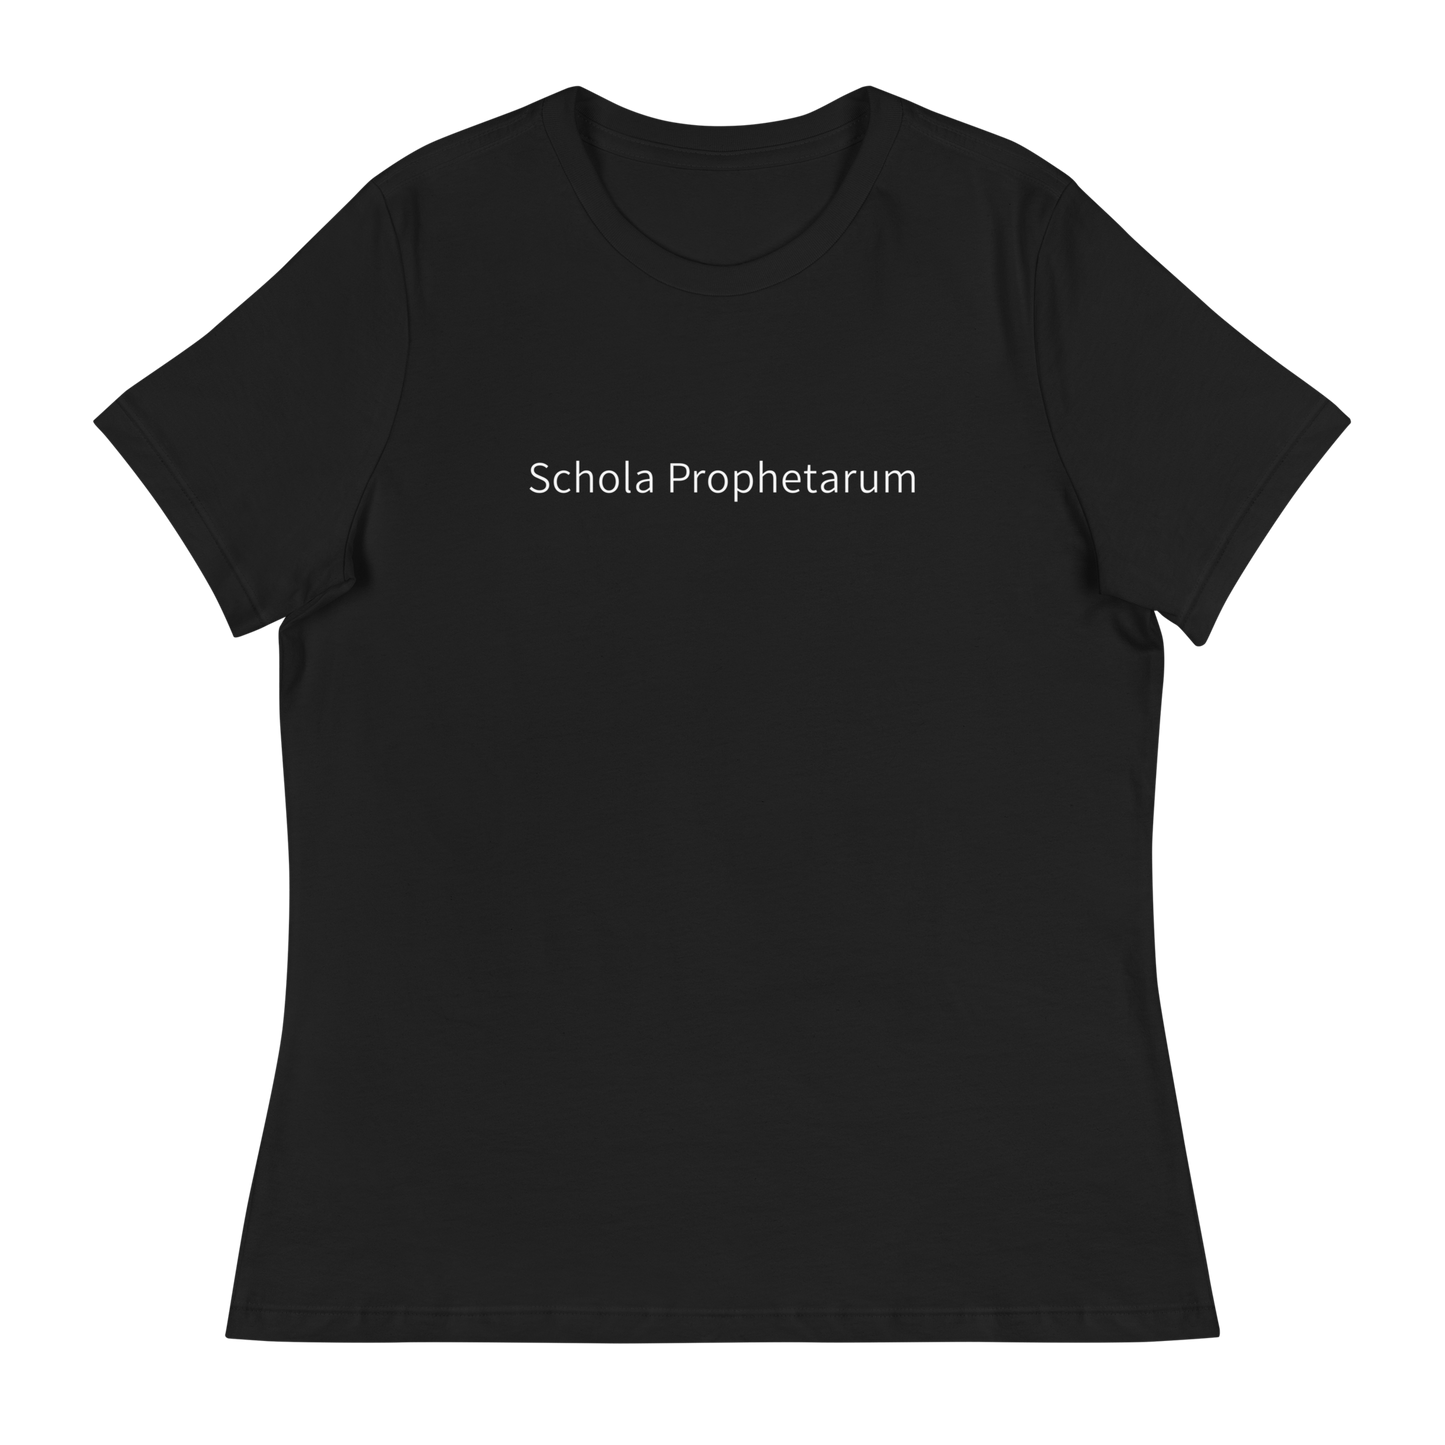 VU Divinity Schola Prophetarum  Women's Relaxed T-Shirt